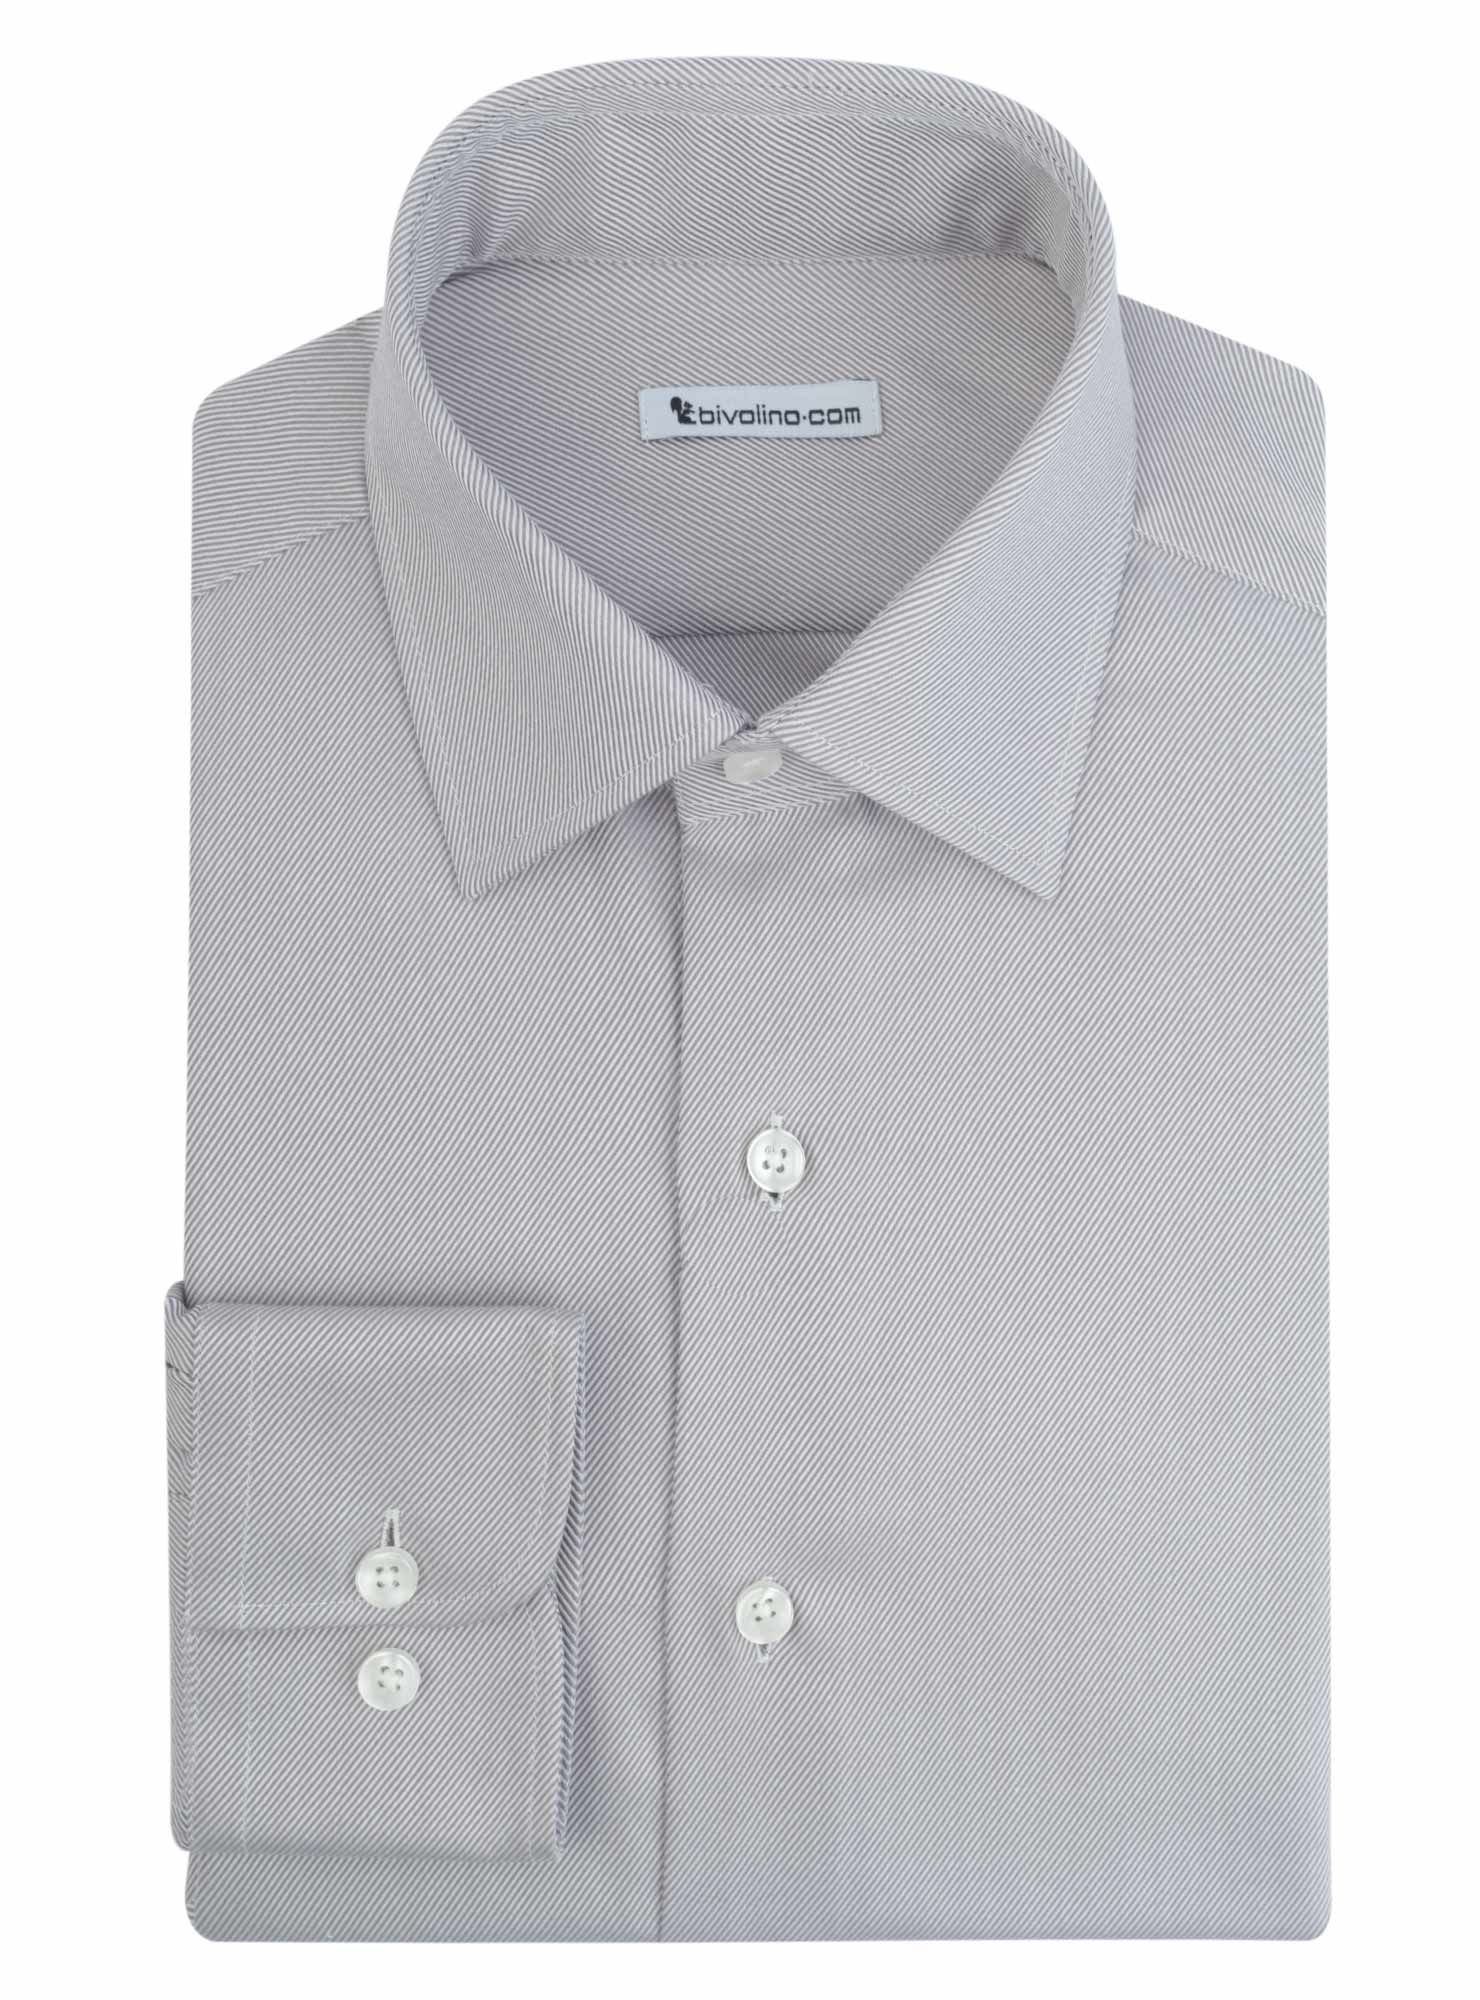 PRATO - gray twill tailored men shirt - ROCO 7